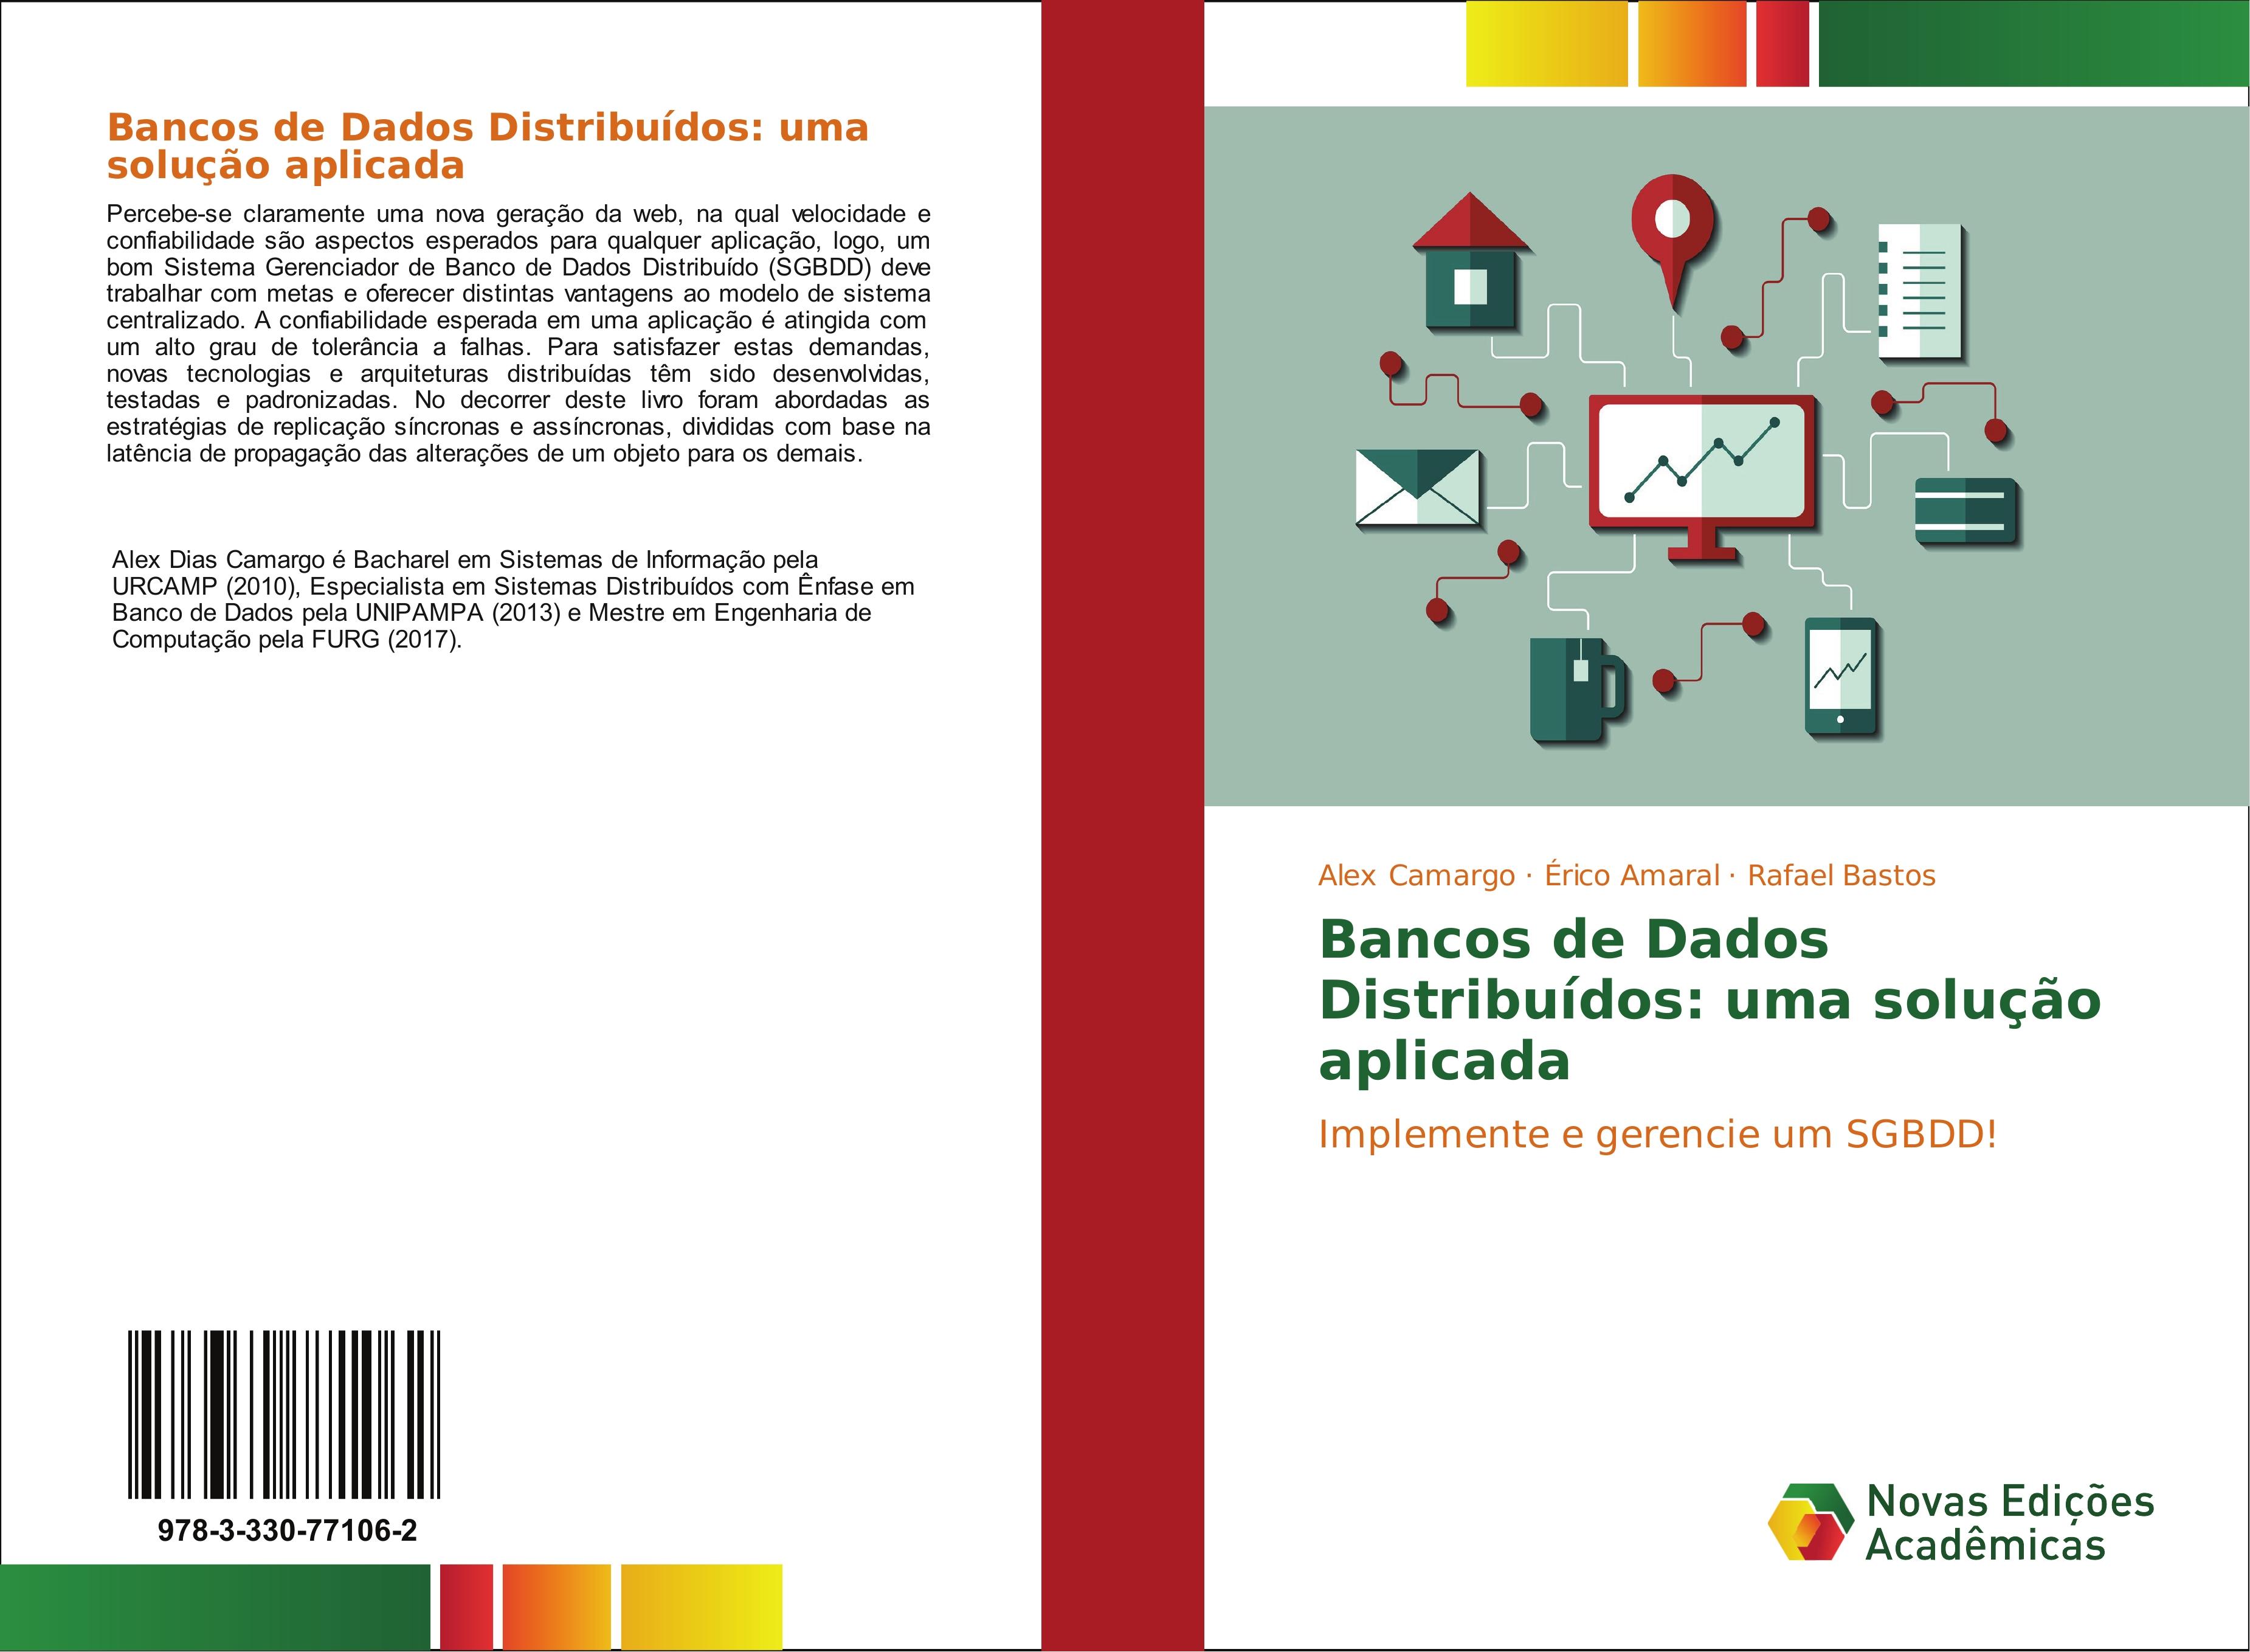 Bancos de Dados Distribuídos: uma solução aplicada / Implemente e gerencie um SGBDD! / Alex Camargo (u. a.) / Taschenbuch / Paperback / Portugiesisch / 2017 / Novas Edições Acadêmicas - Camargo, Alex